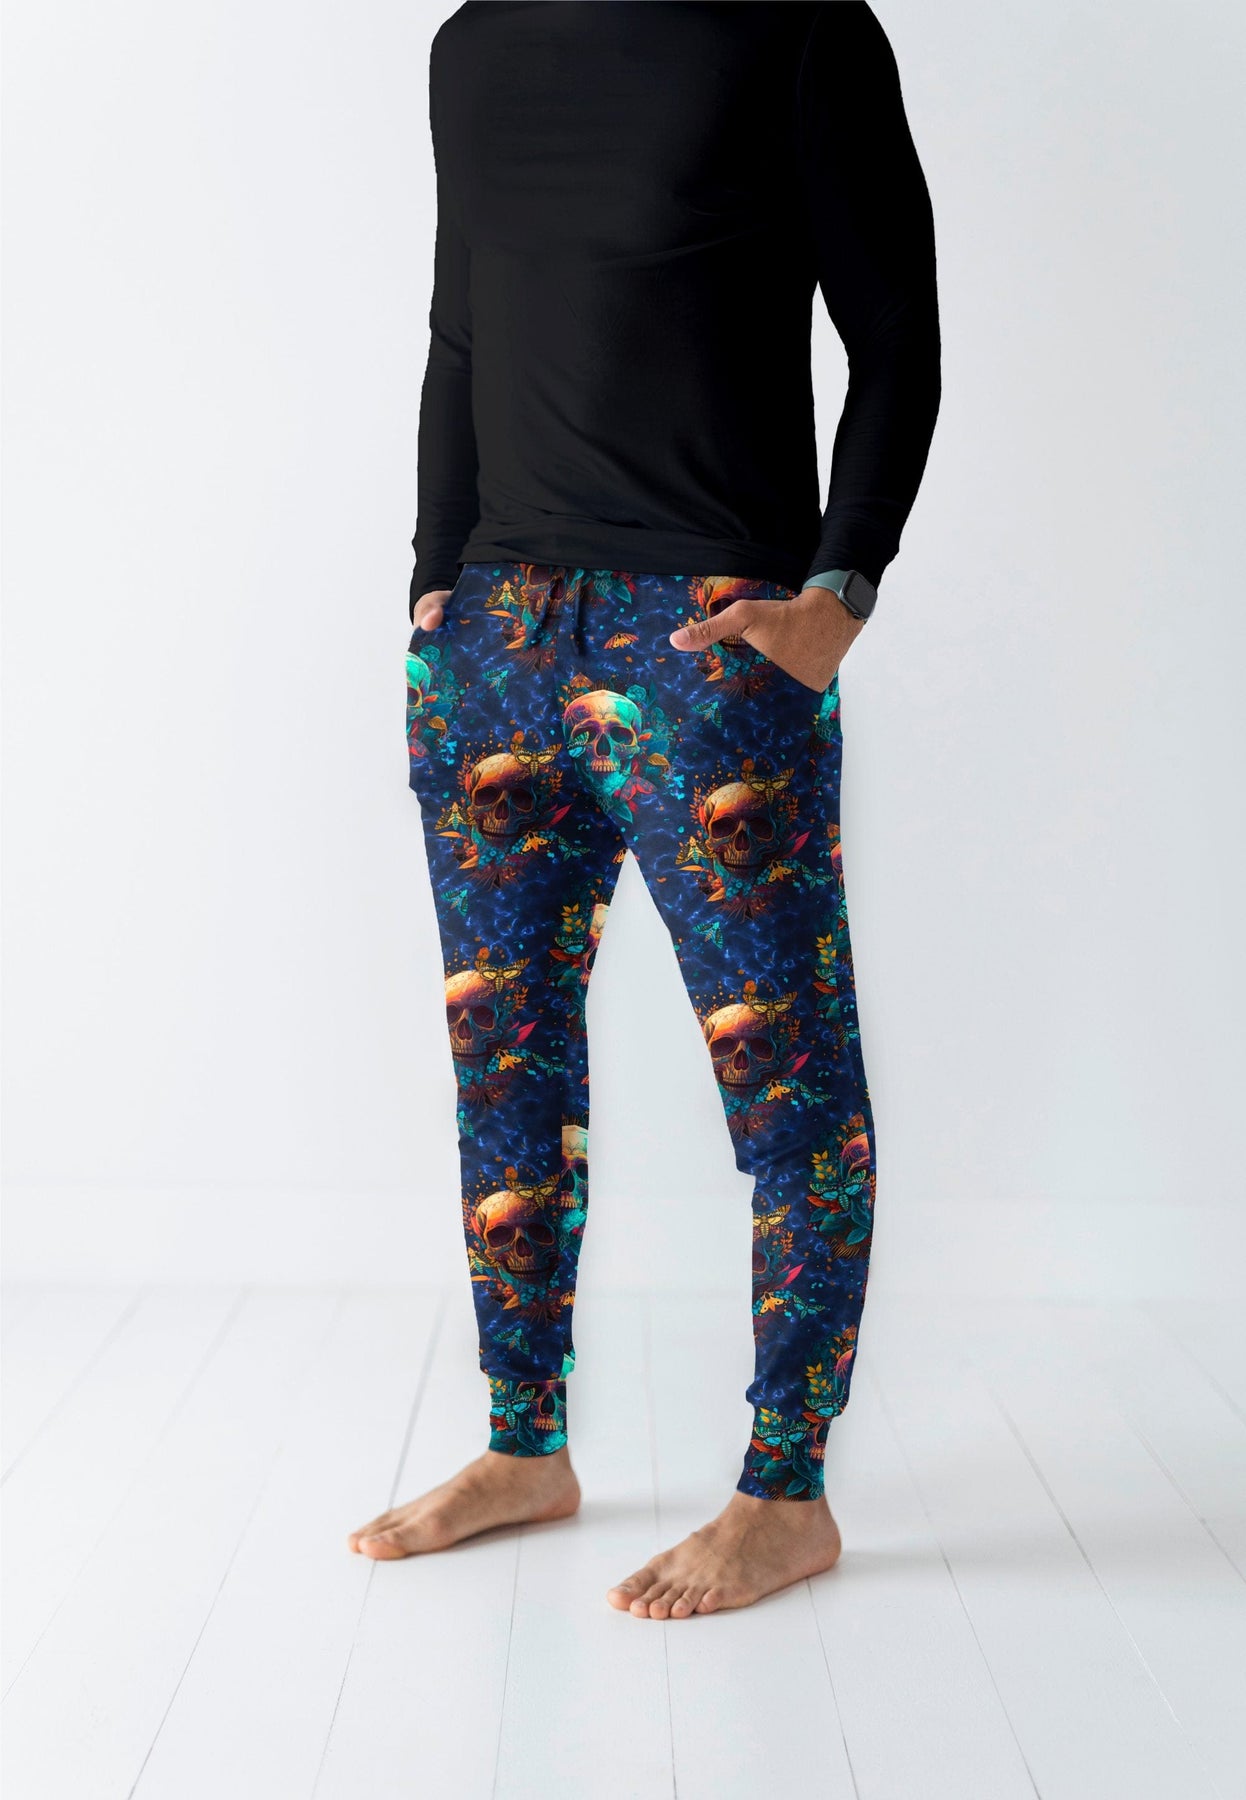 Zara | Pants | Zara Man Floral Print Trousers Jogguin Pants M | Poshmark